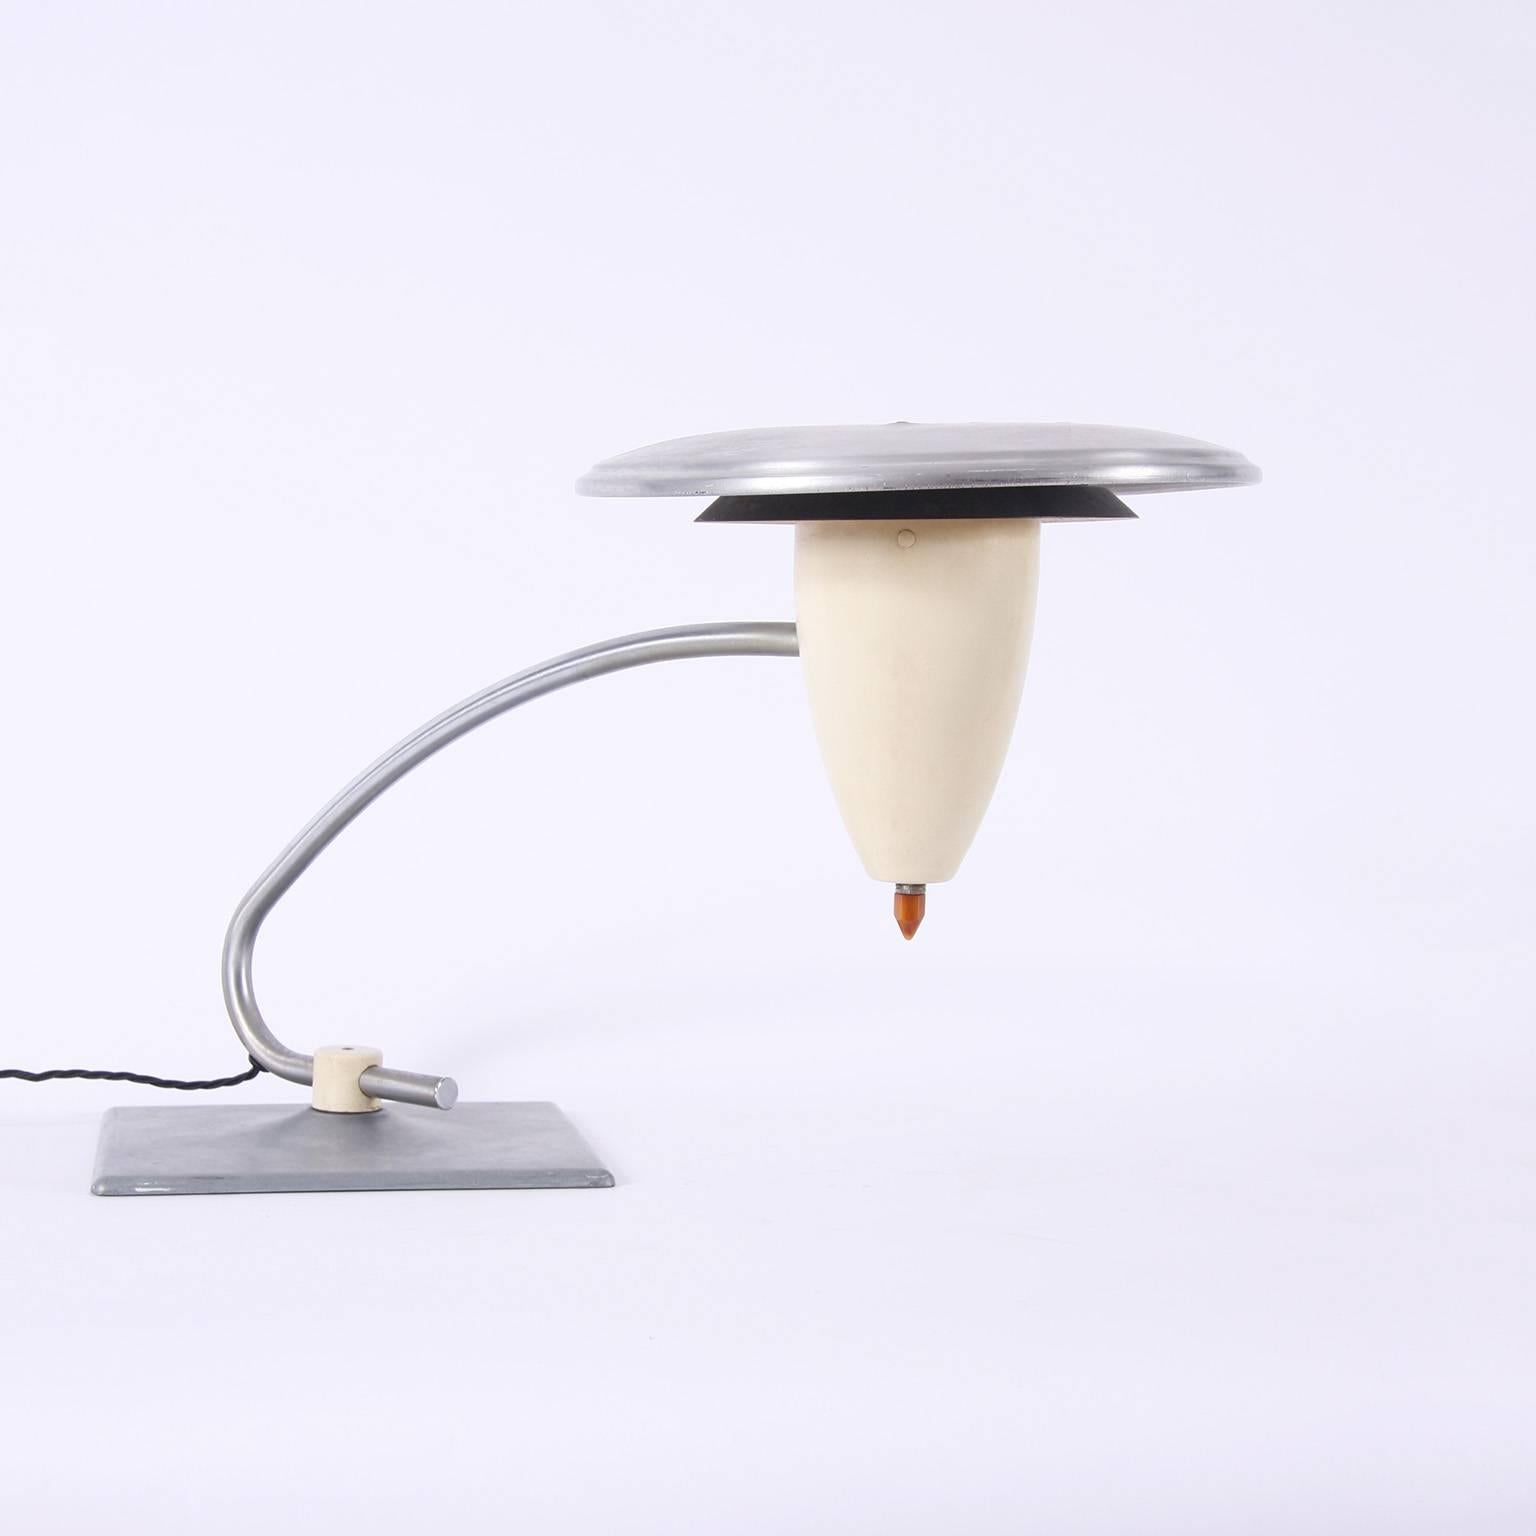 Mid-20th Century Aluminium Razor Desk Lamp, American, 1960s For Sale